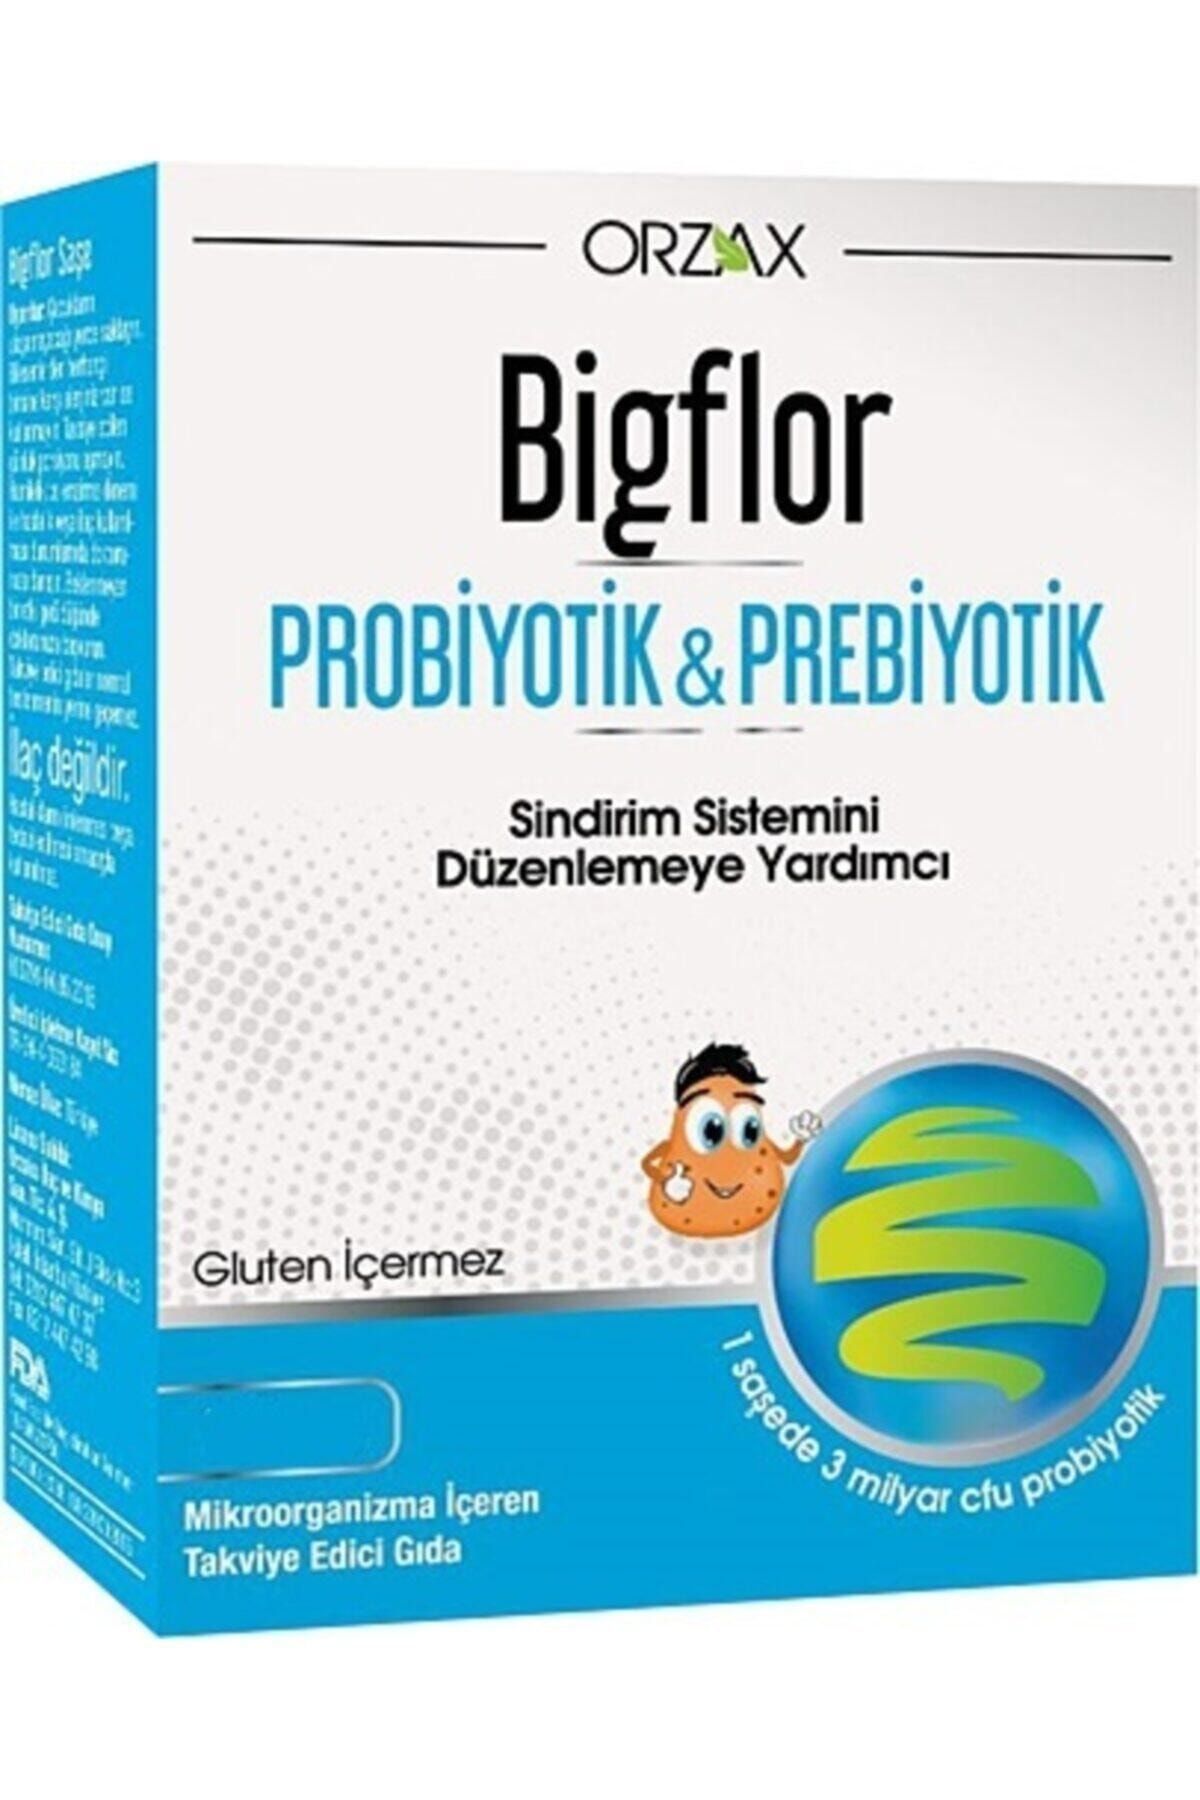 probiyotik